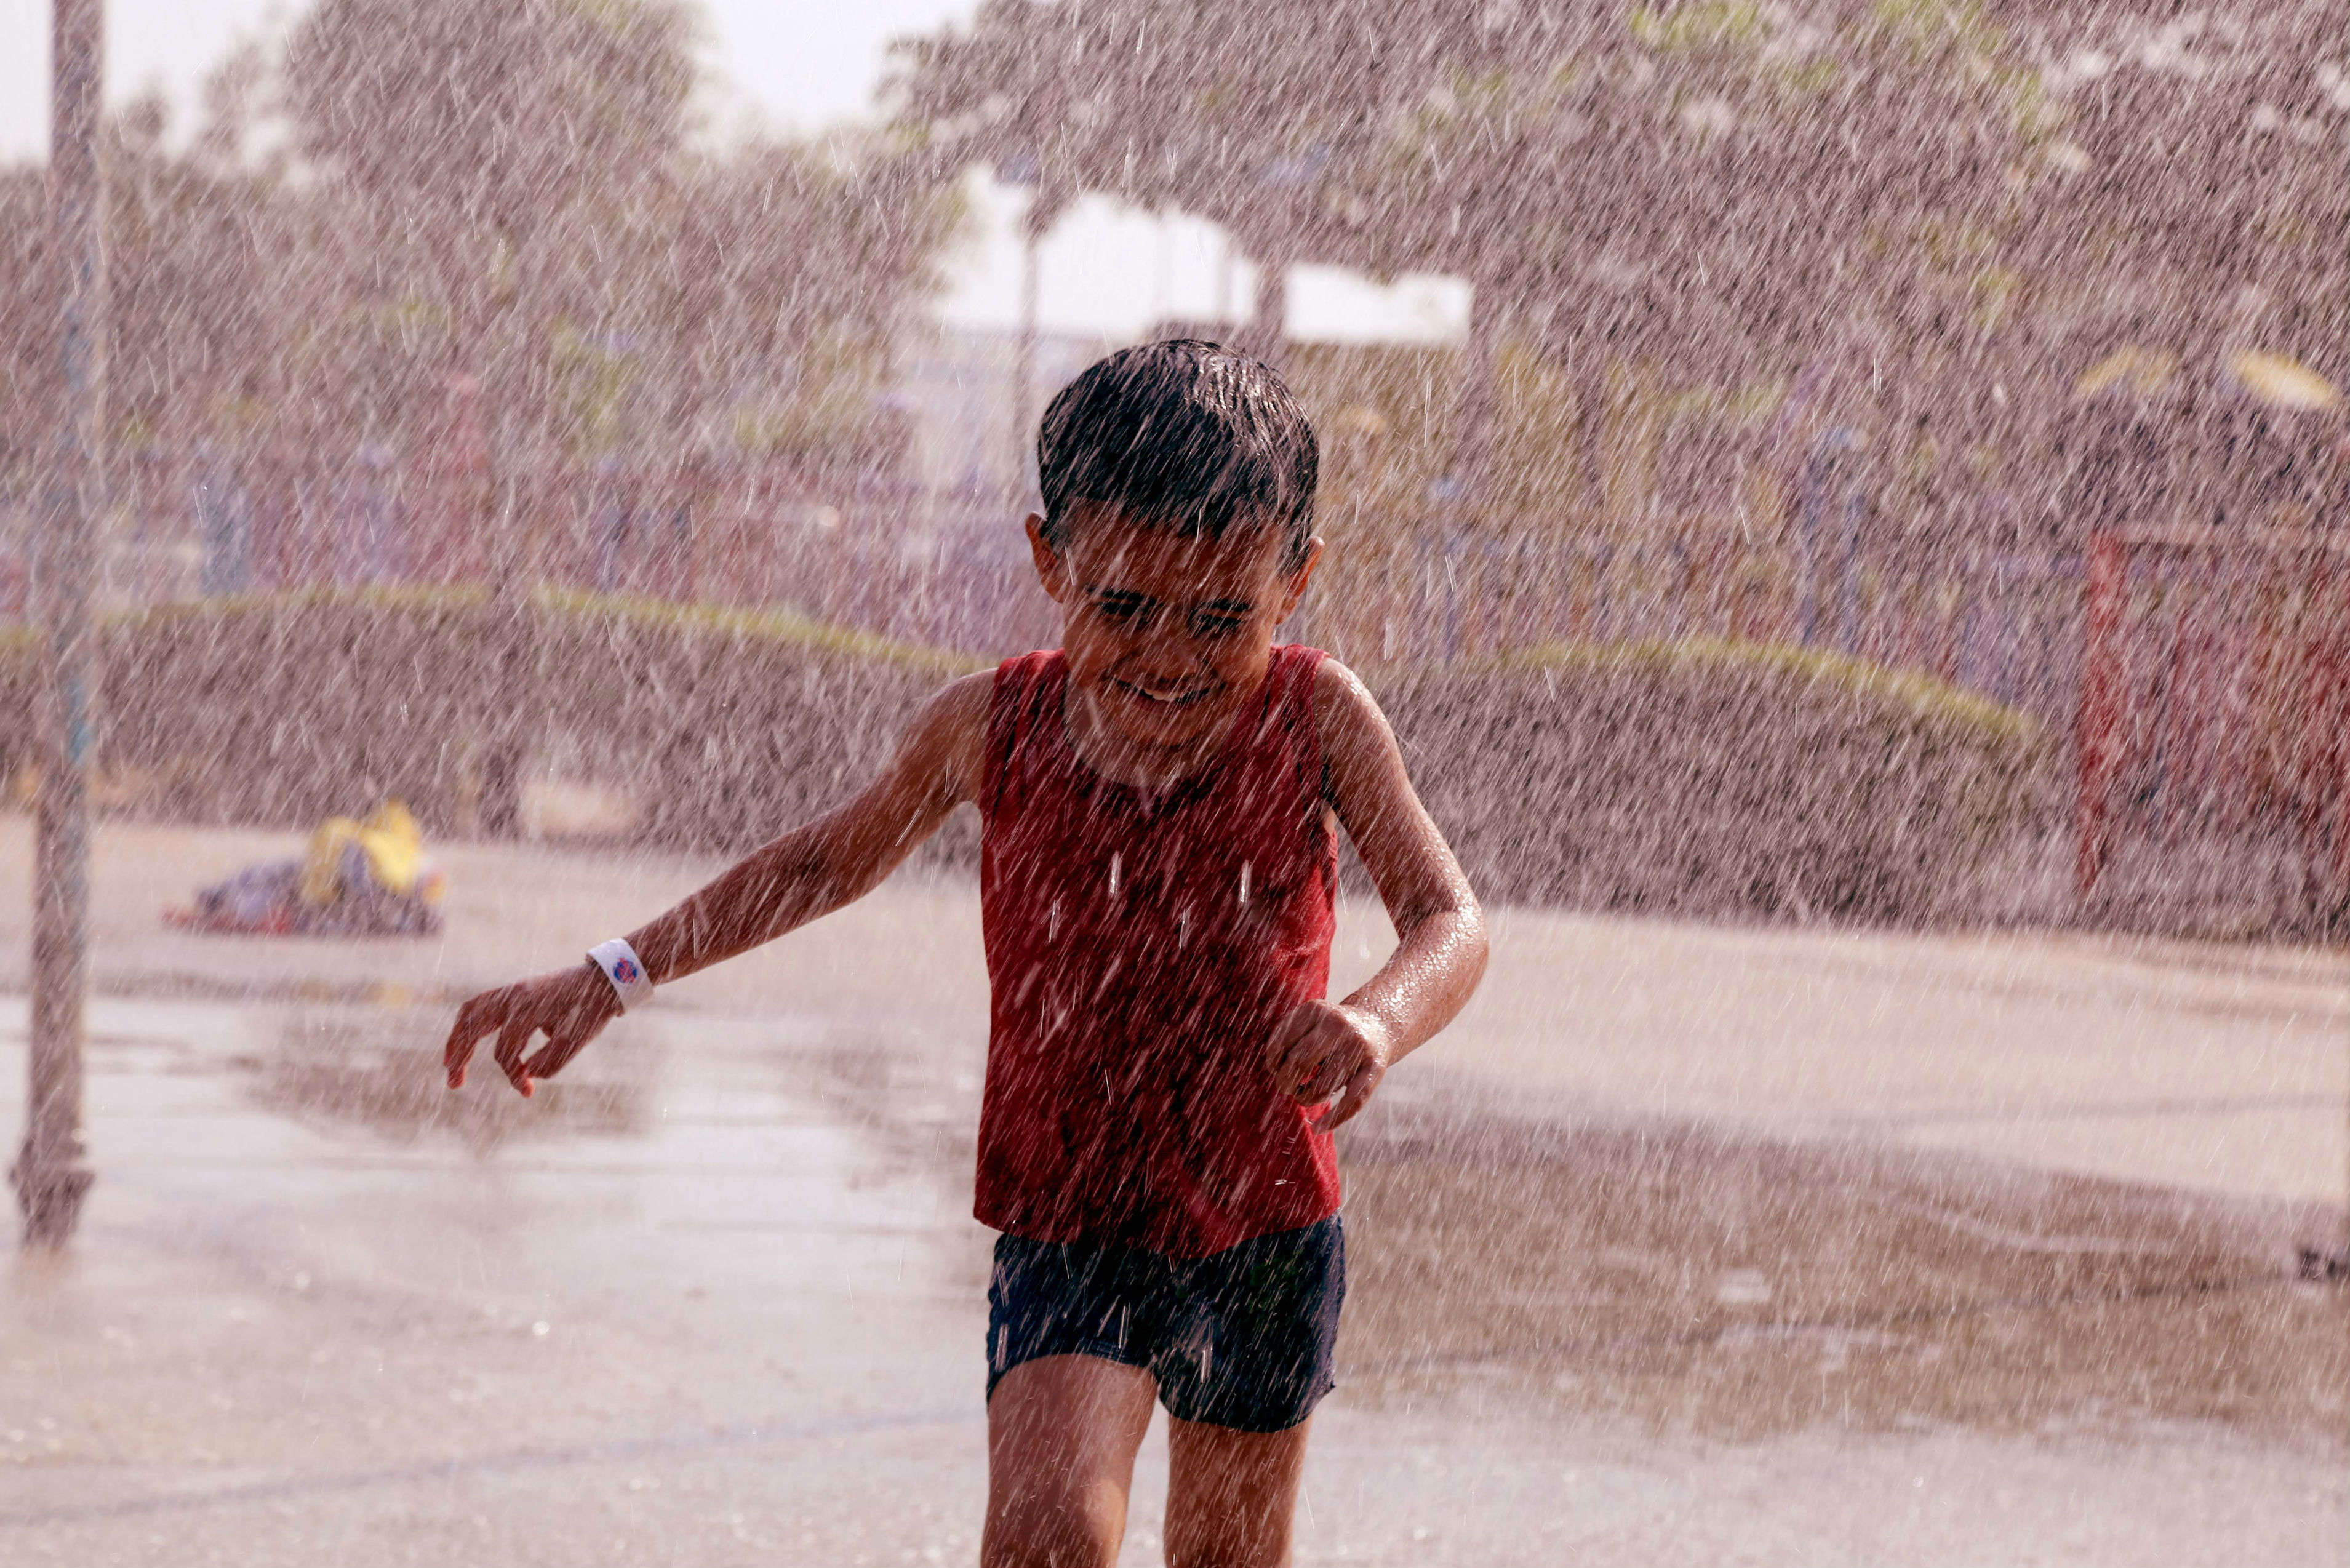 Rain in Delhi NCR – rain drops temperature and presents a pleasant day